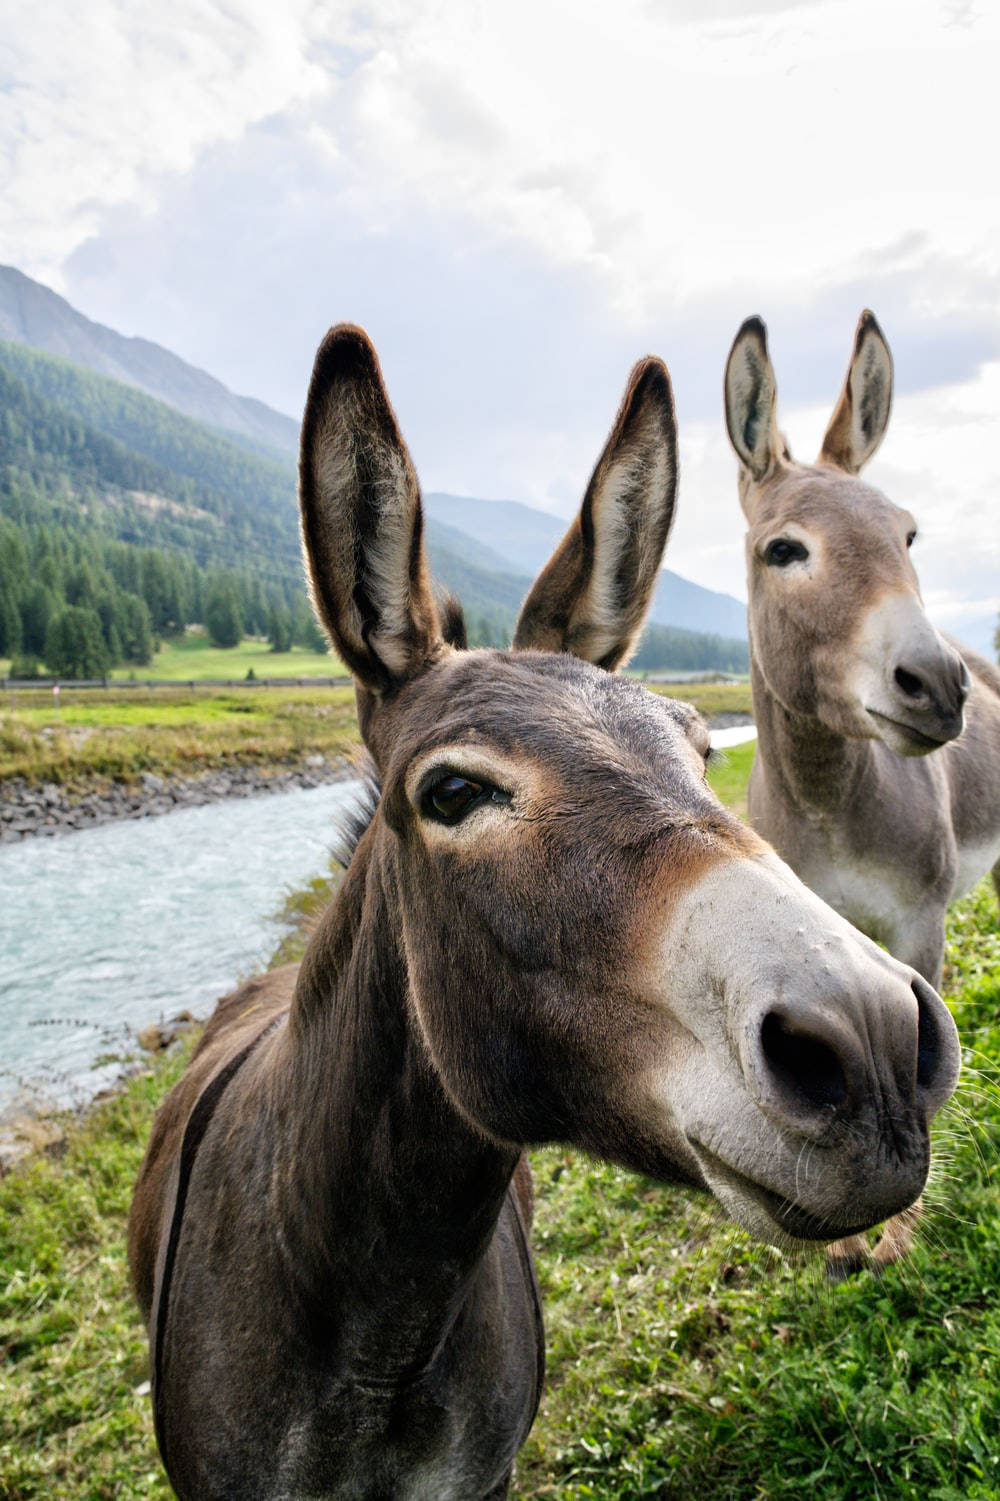 Two Cute Donkeys